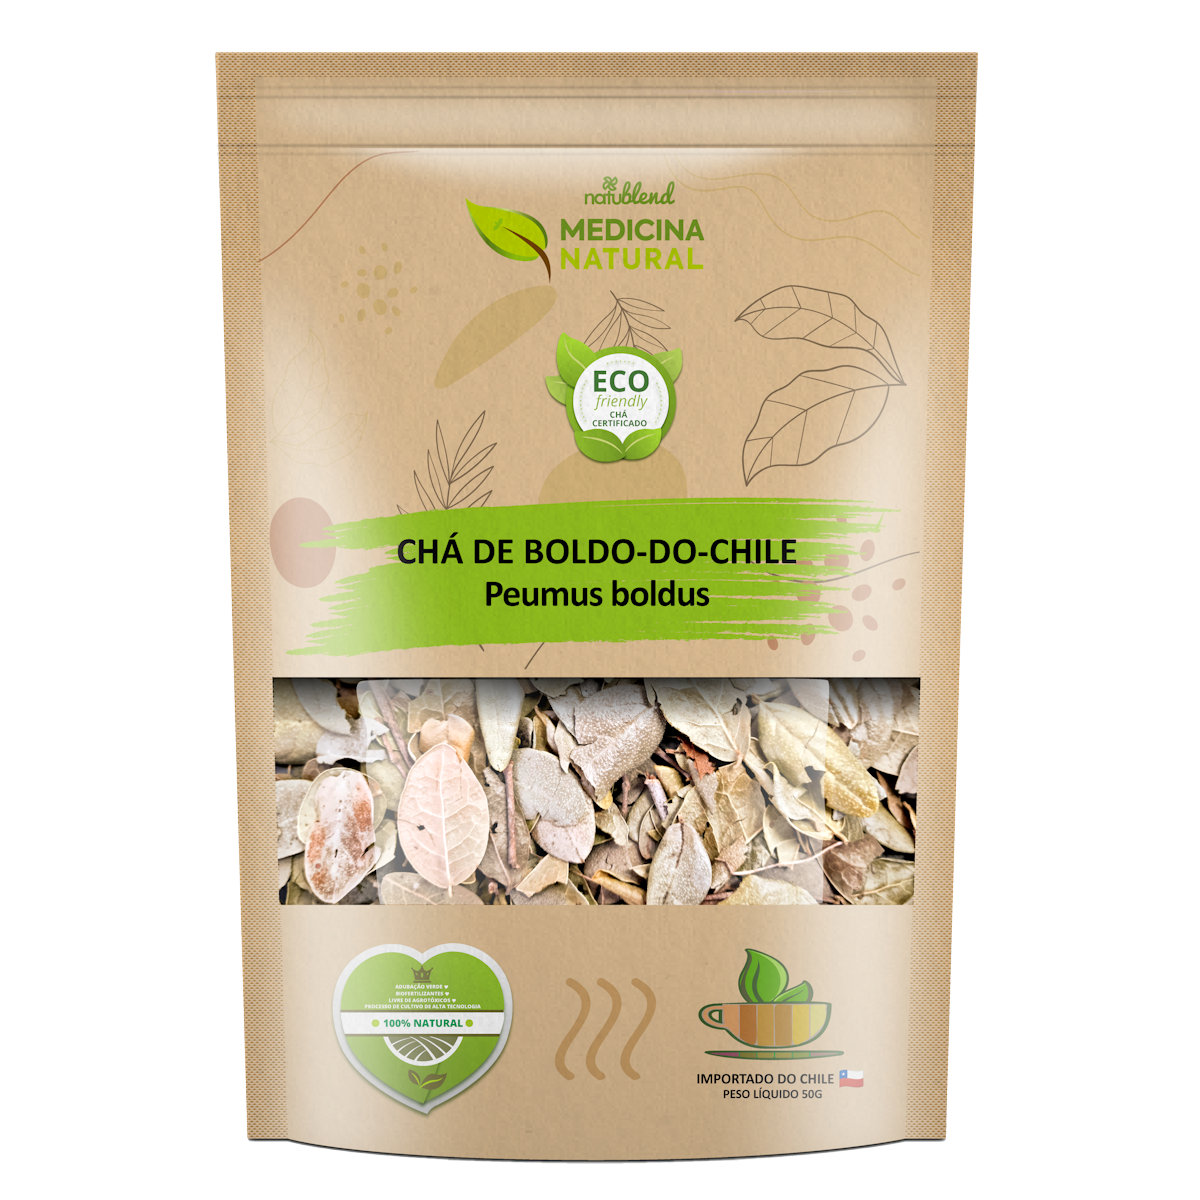 Chá de Boldo do Chile - Peumus boldus - Medicina Natural